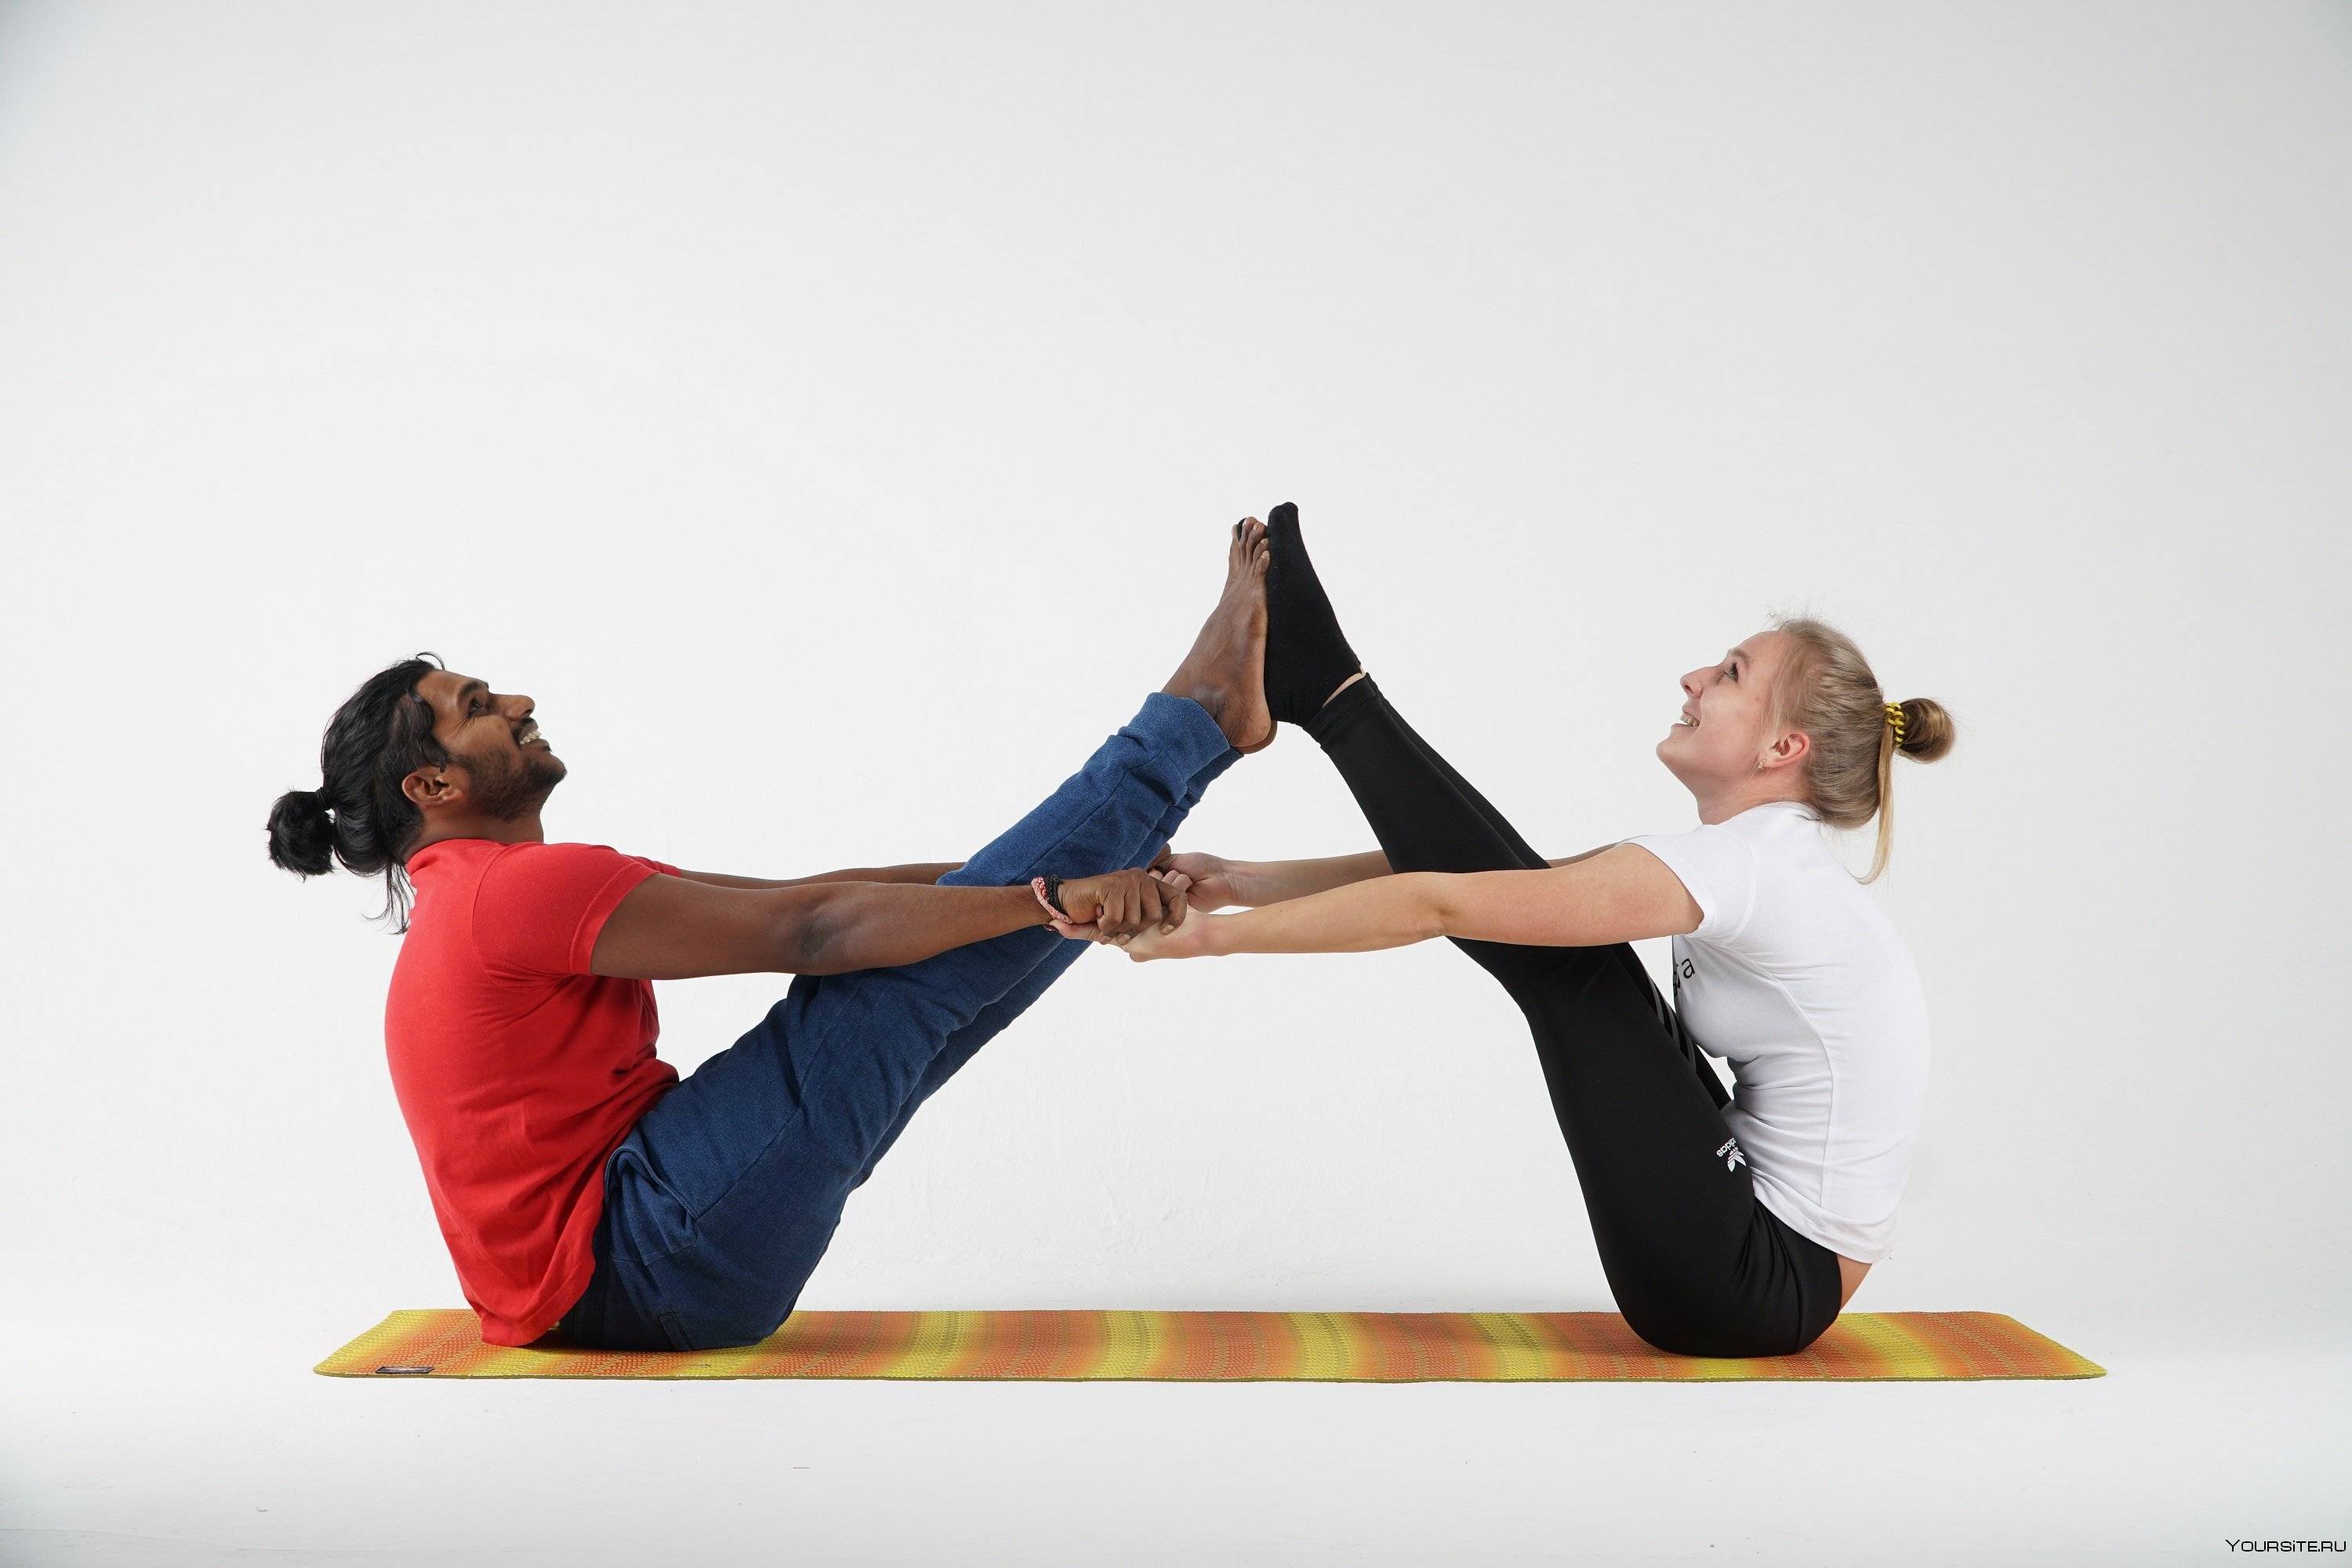 16 поз йоги для двоих на укрепление отношений